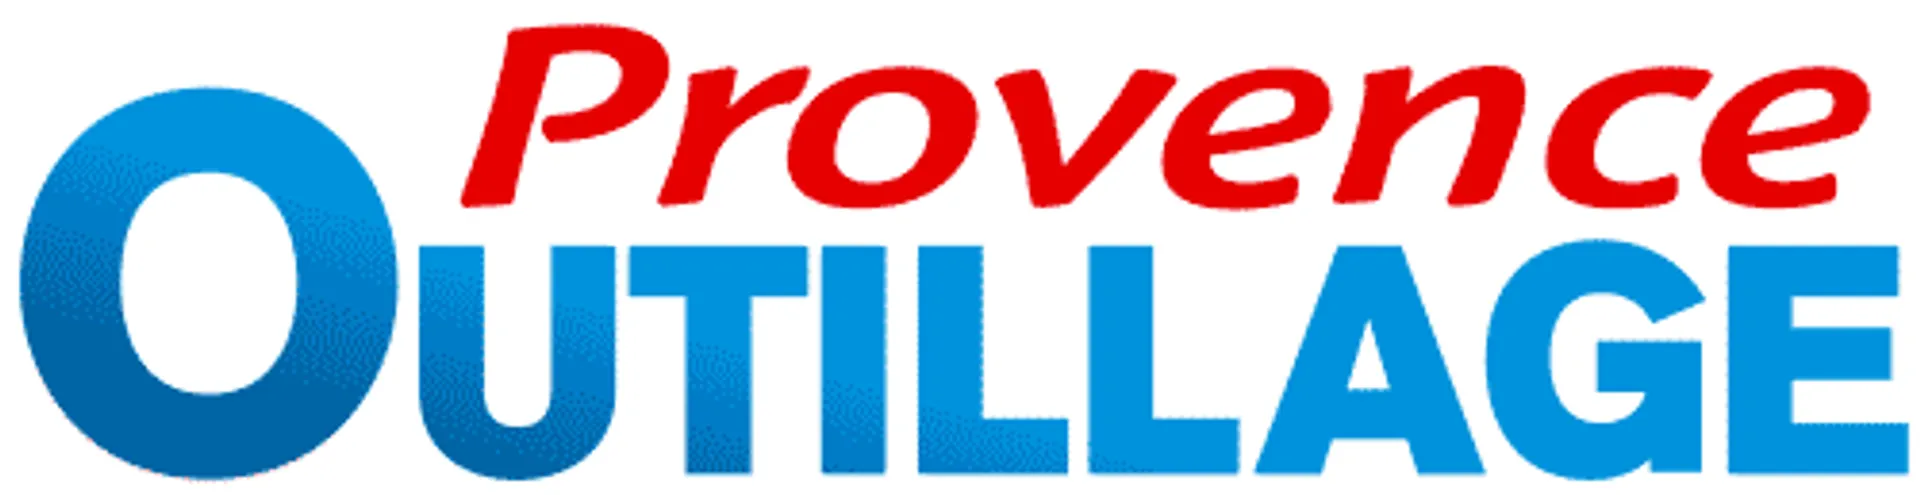 PROVENCE OUTILLAGE logo